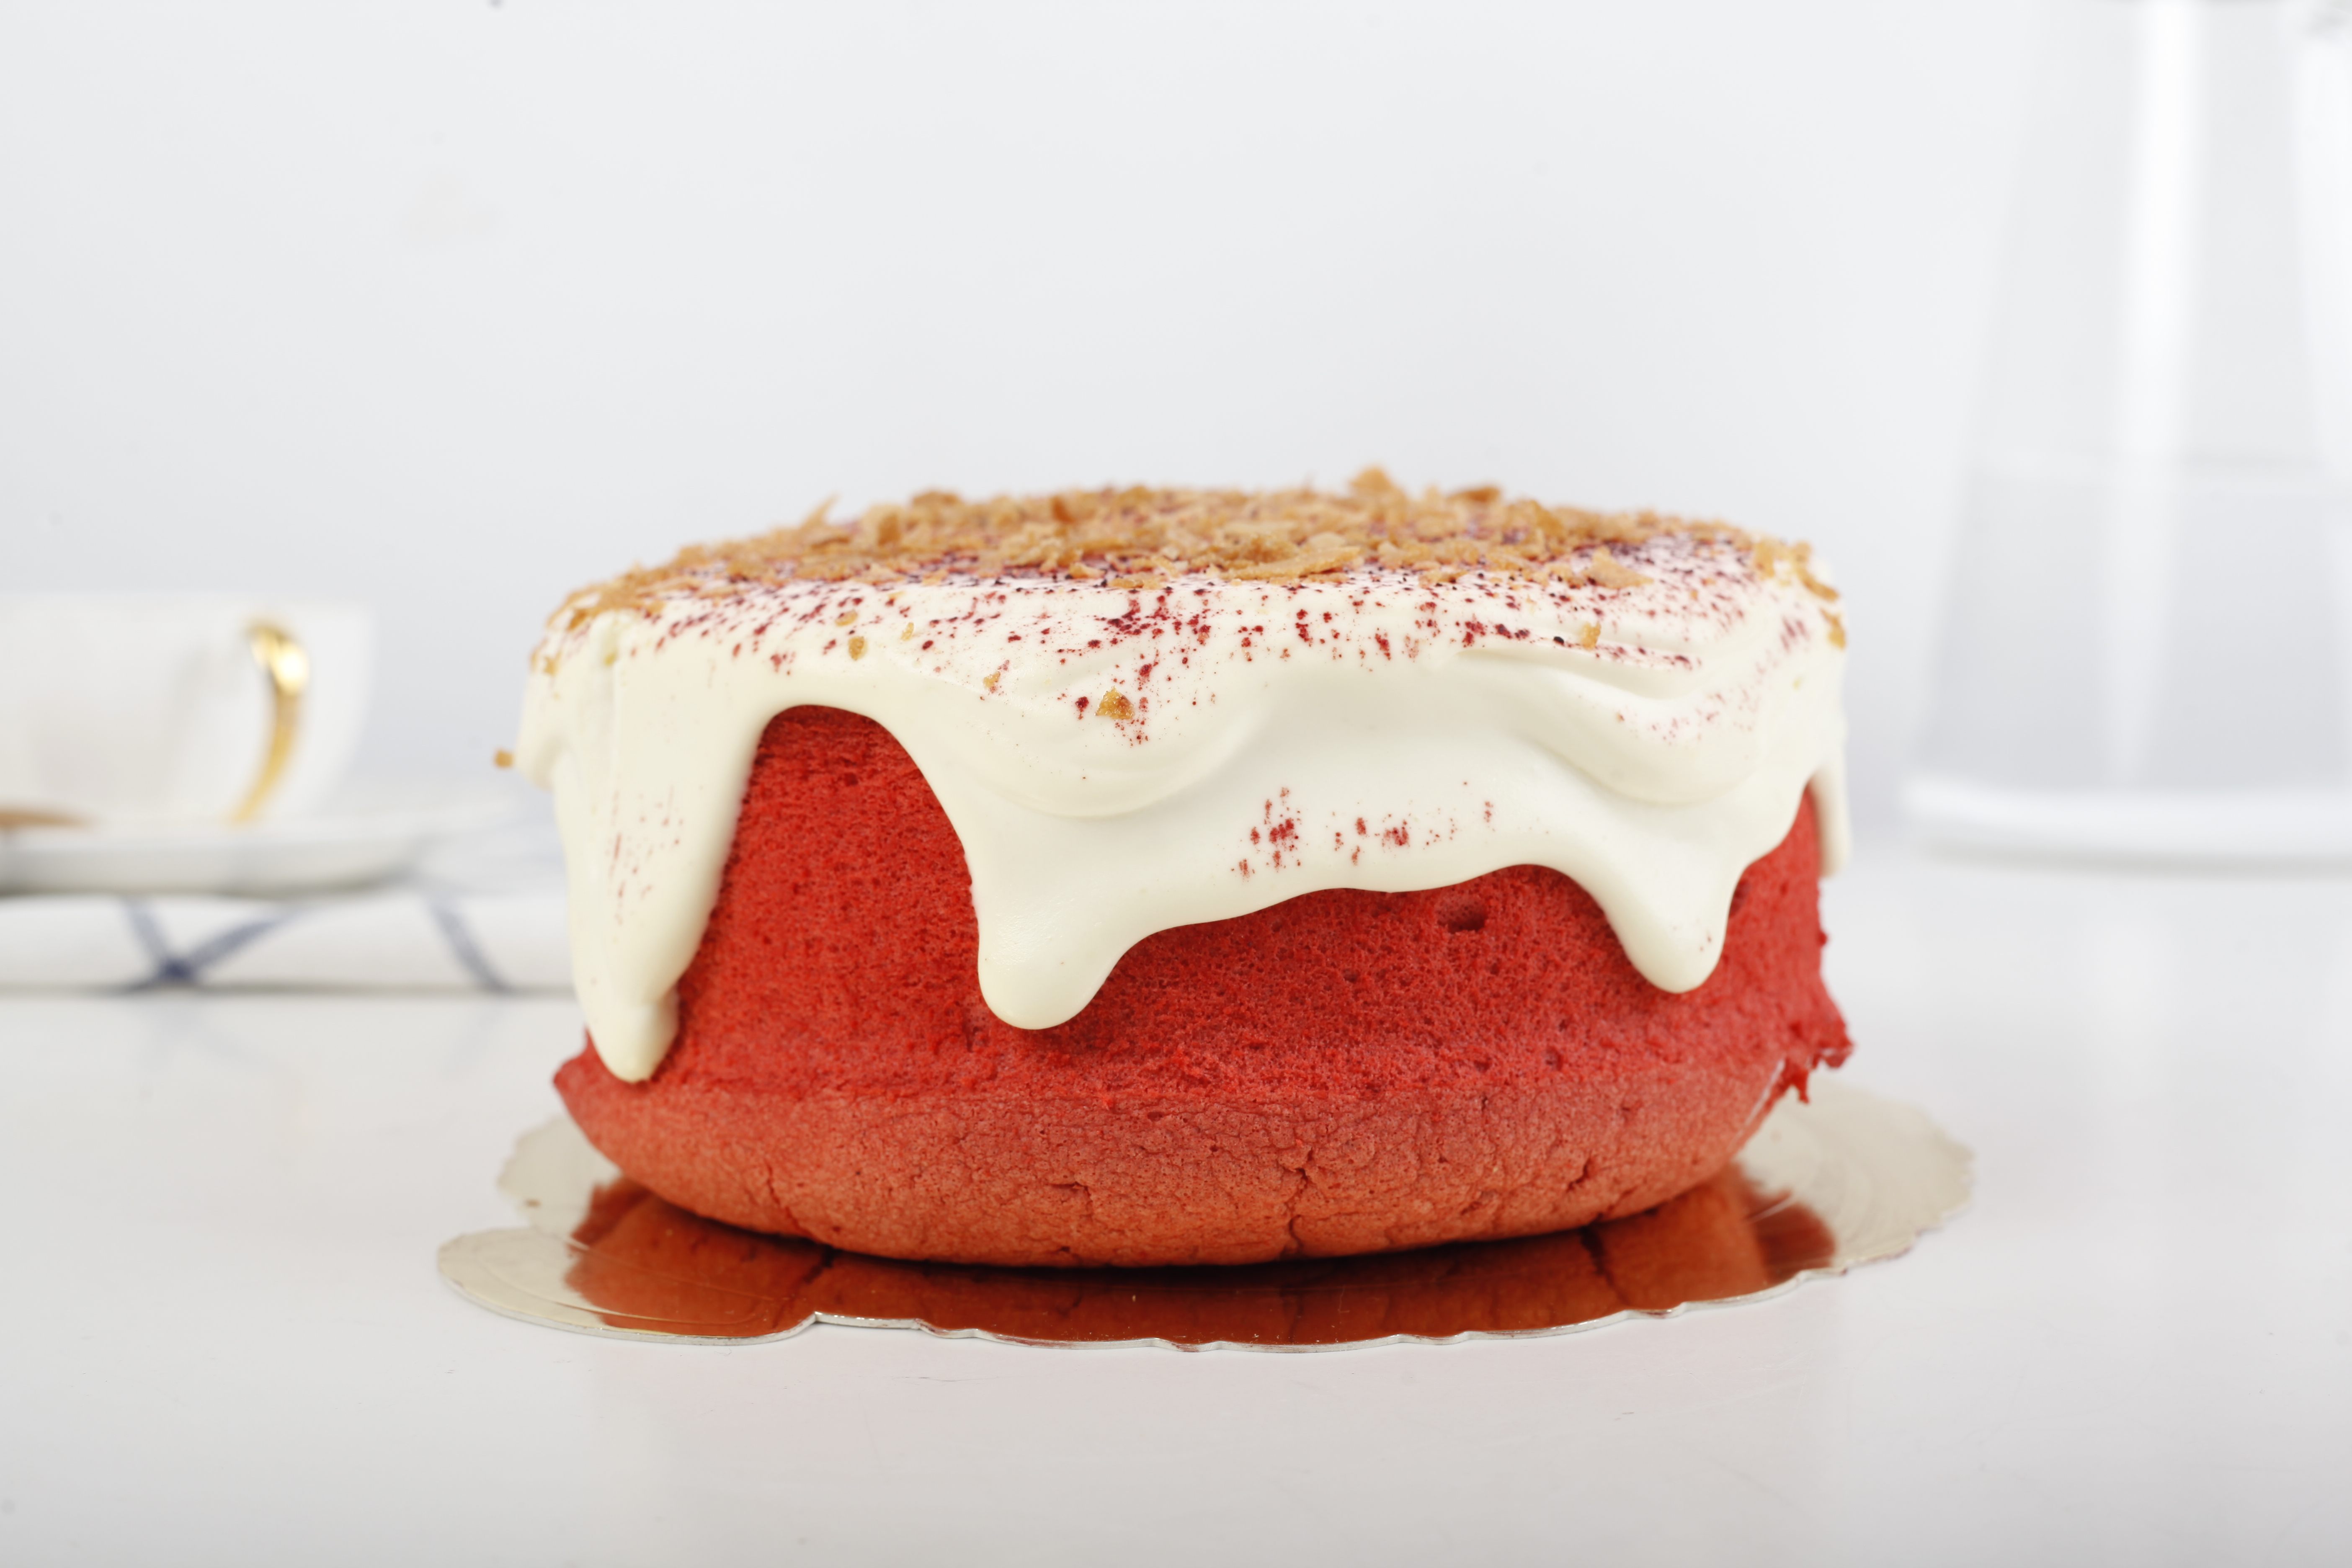 嗨焙食谱 | 喜气洋洋的红丝绒爆浆芝士蛋糕的做法